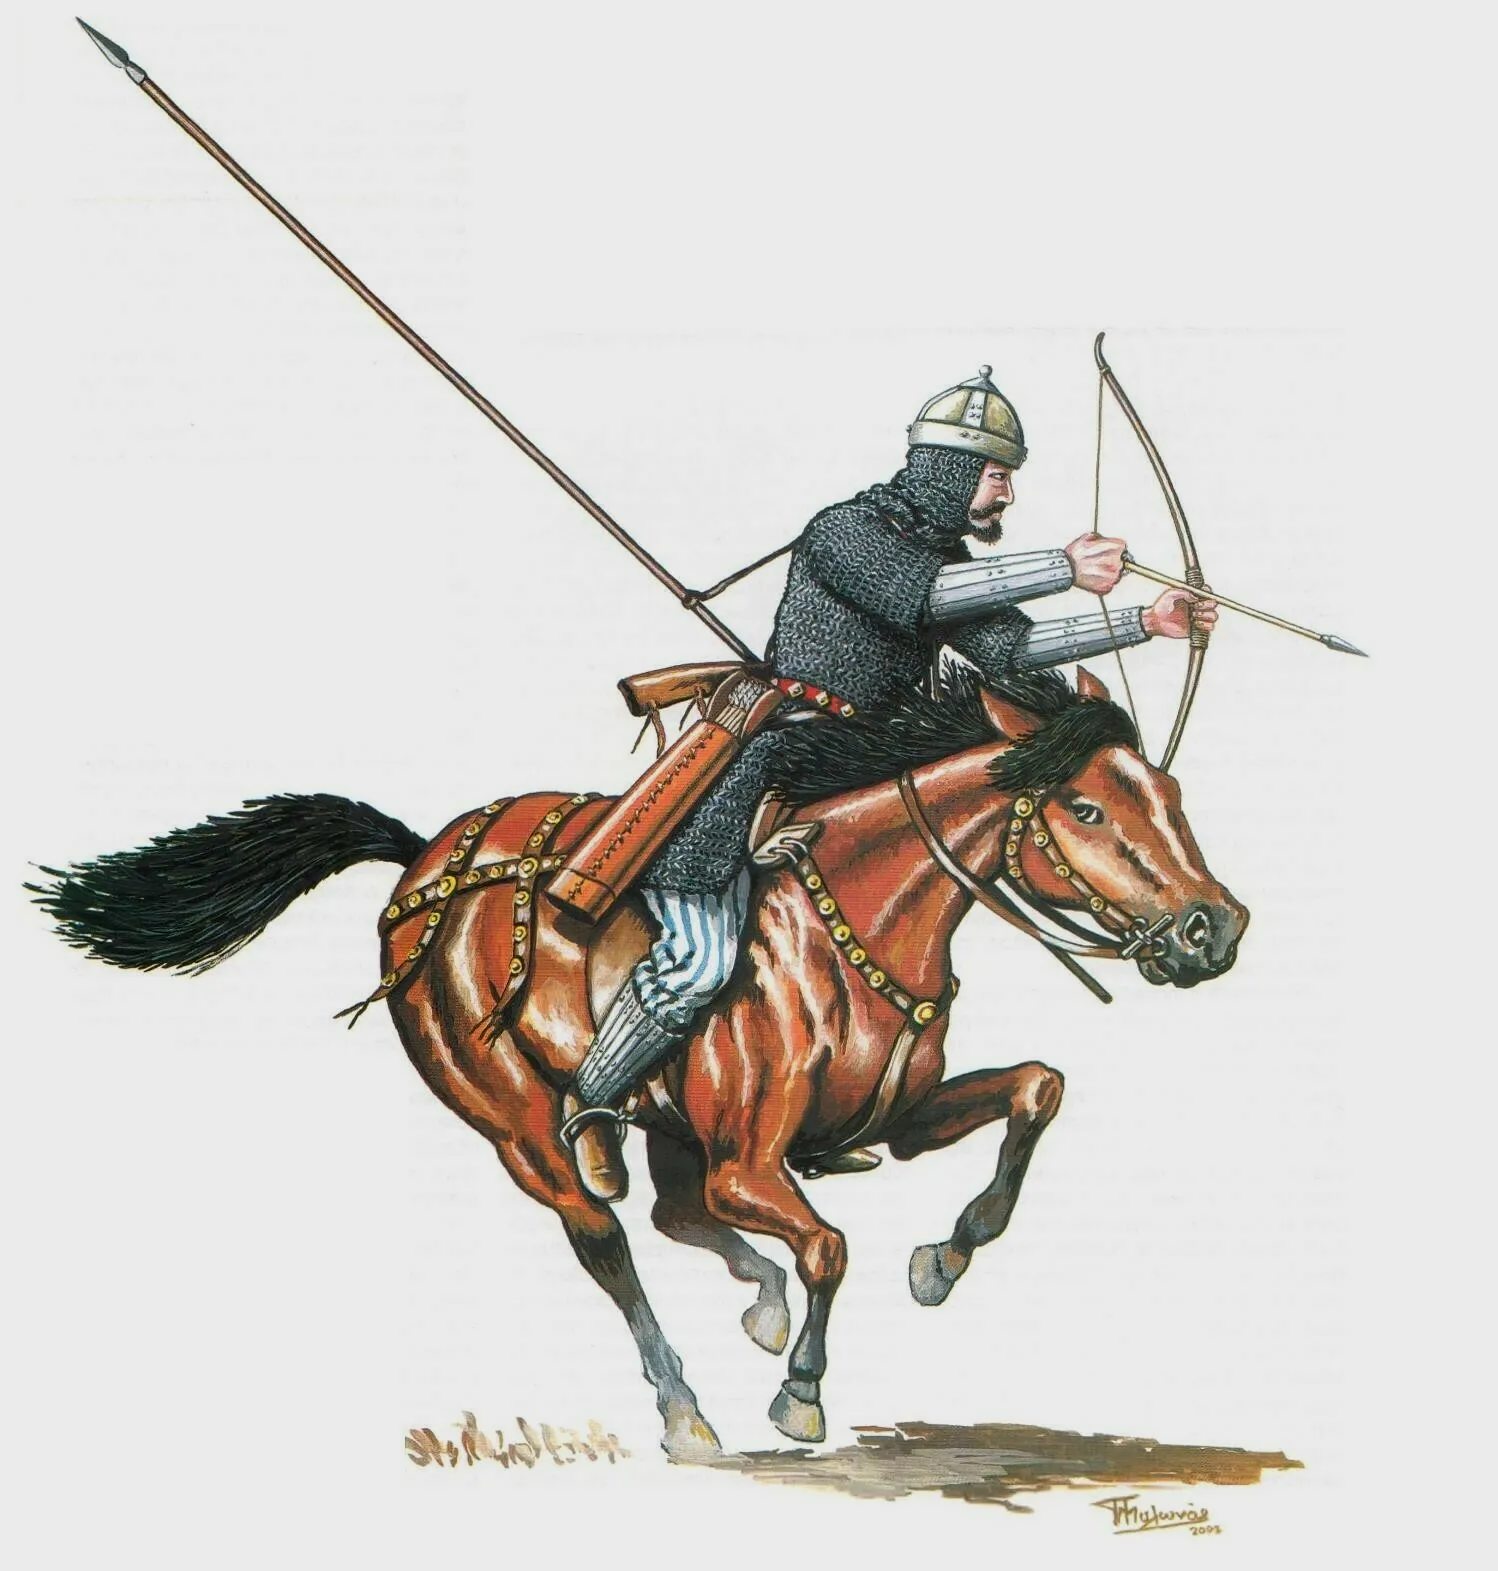 准备射箭的阿瓦尔重骑兵，他的长枪挂在身后，而且装备了全套盔甲和护臂、护胫